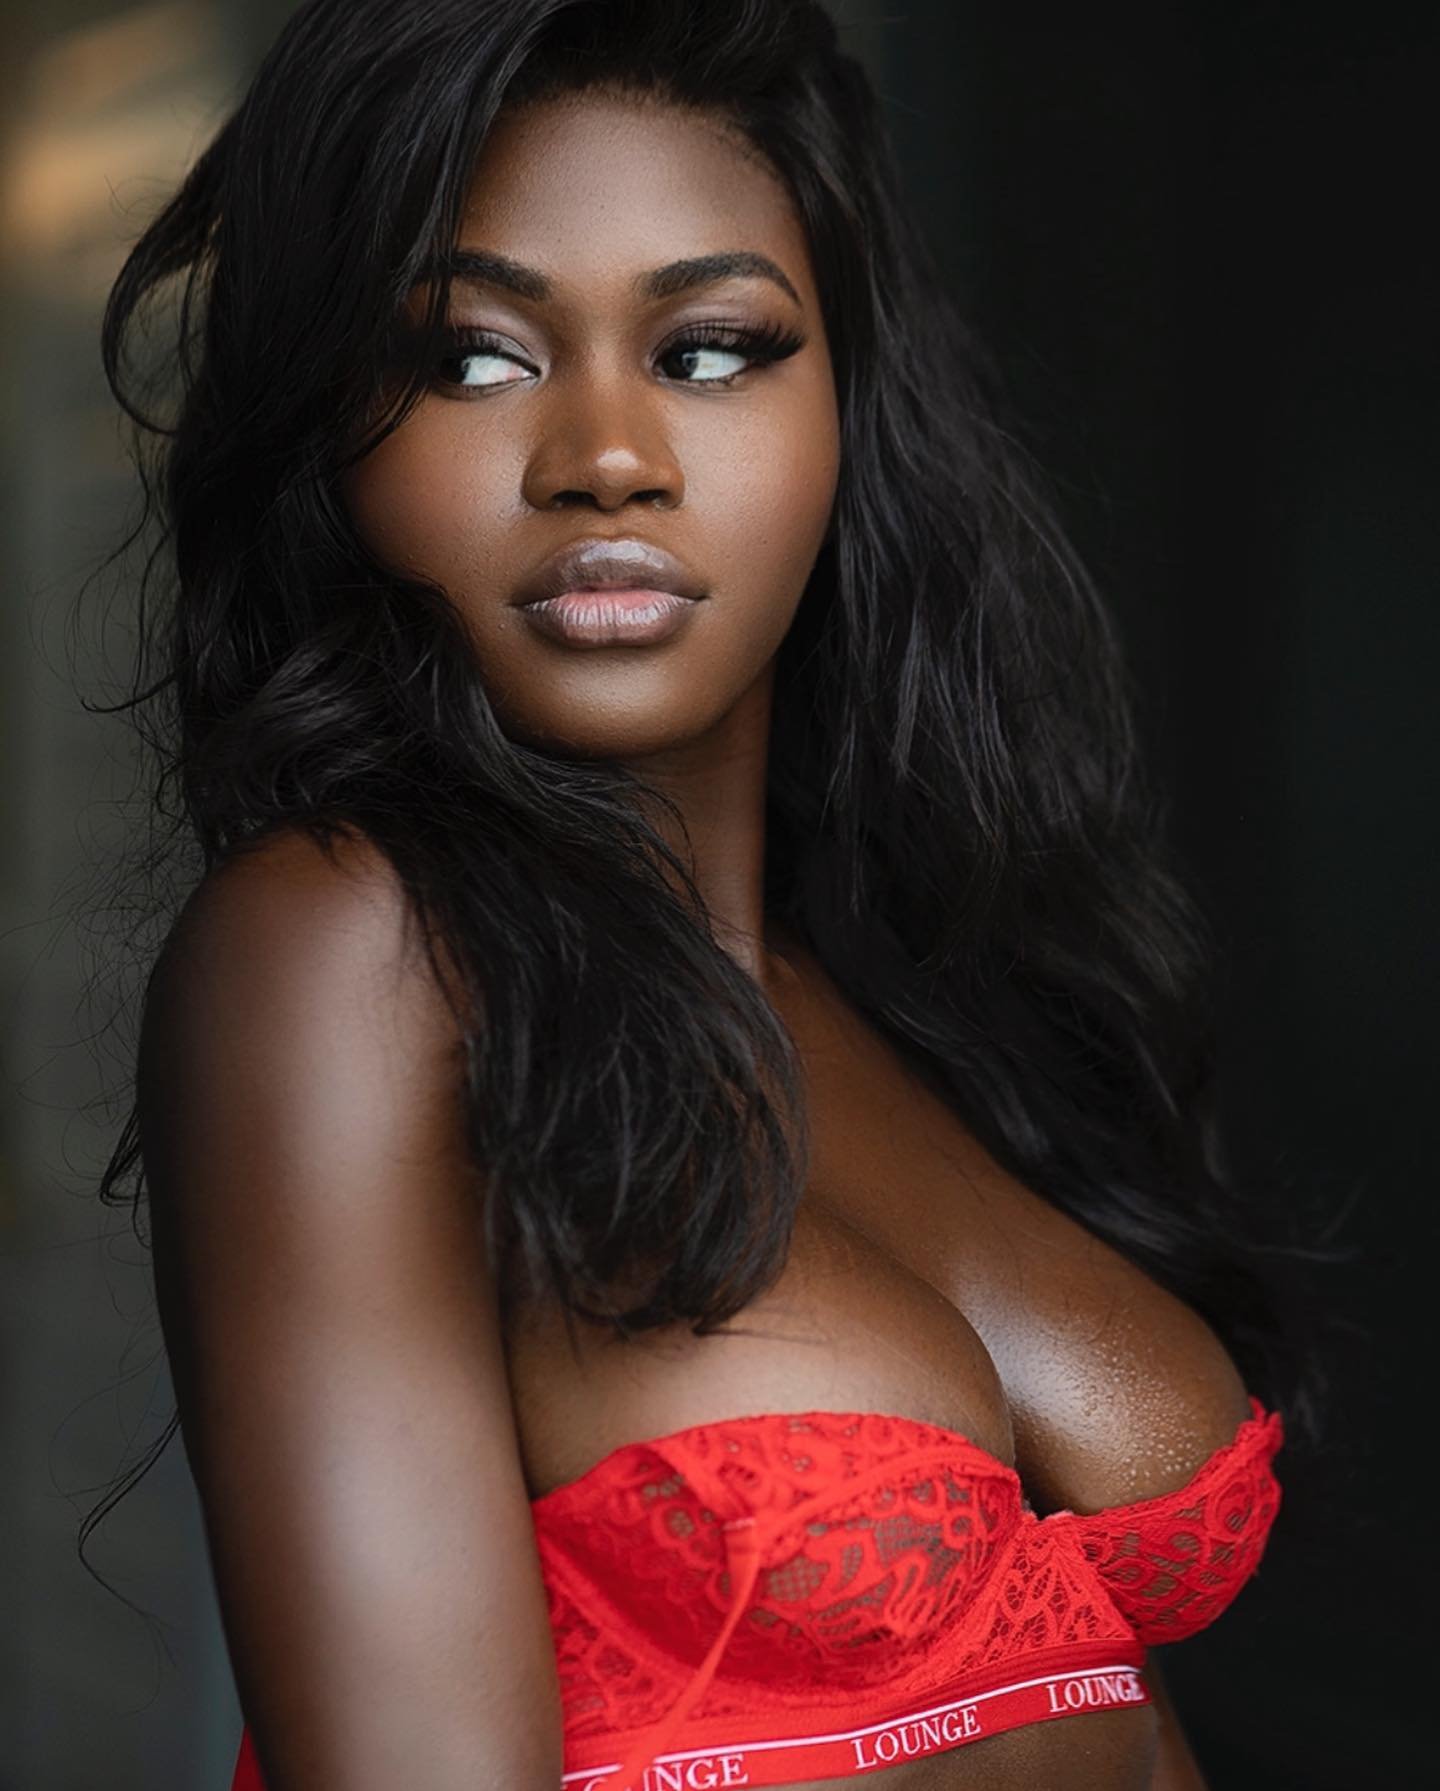 Joshua Paull Fotografo - Ensaio sensual modelo negra de lingerie vermelha